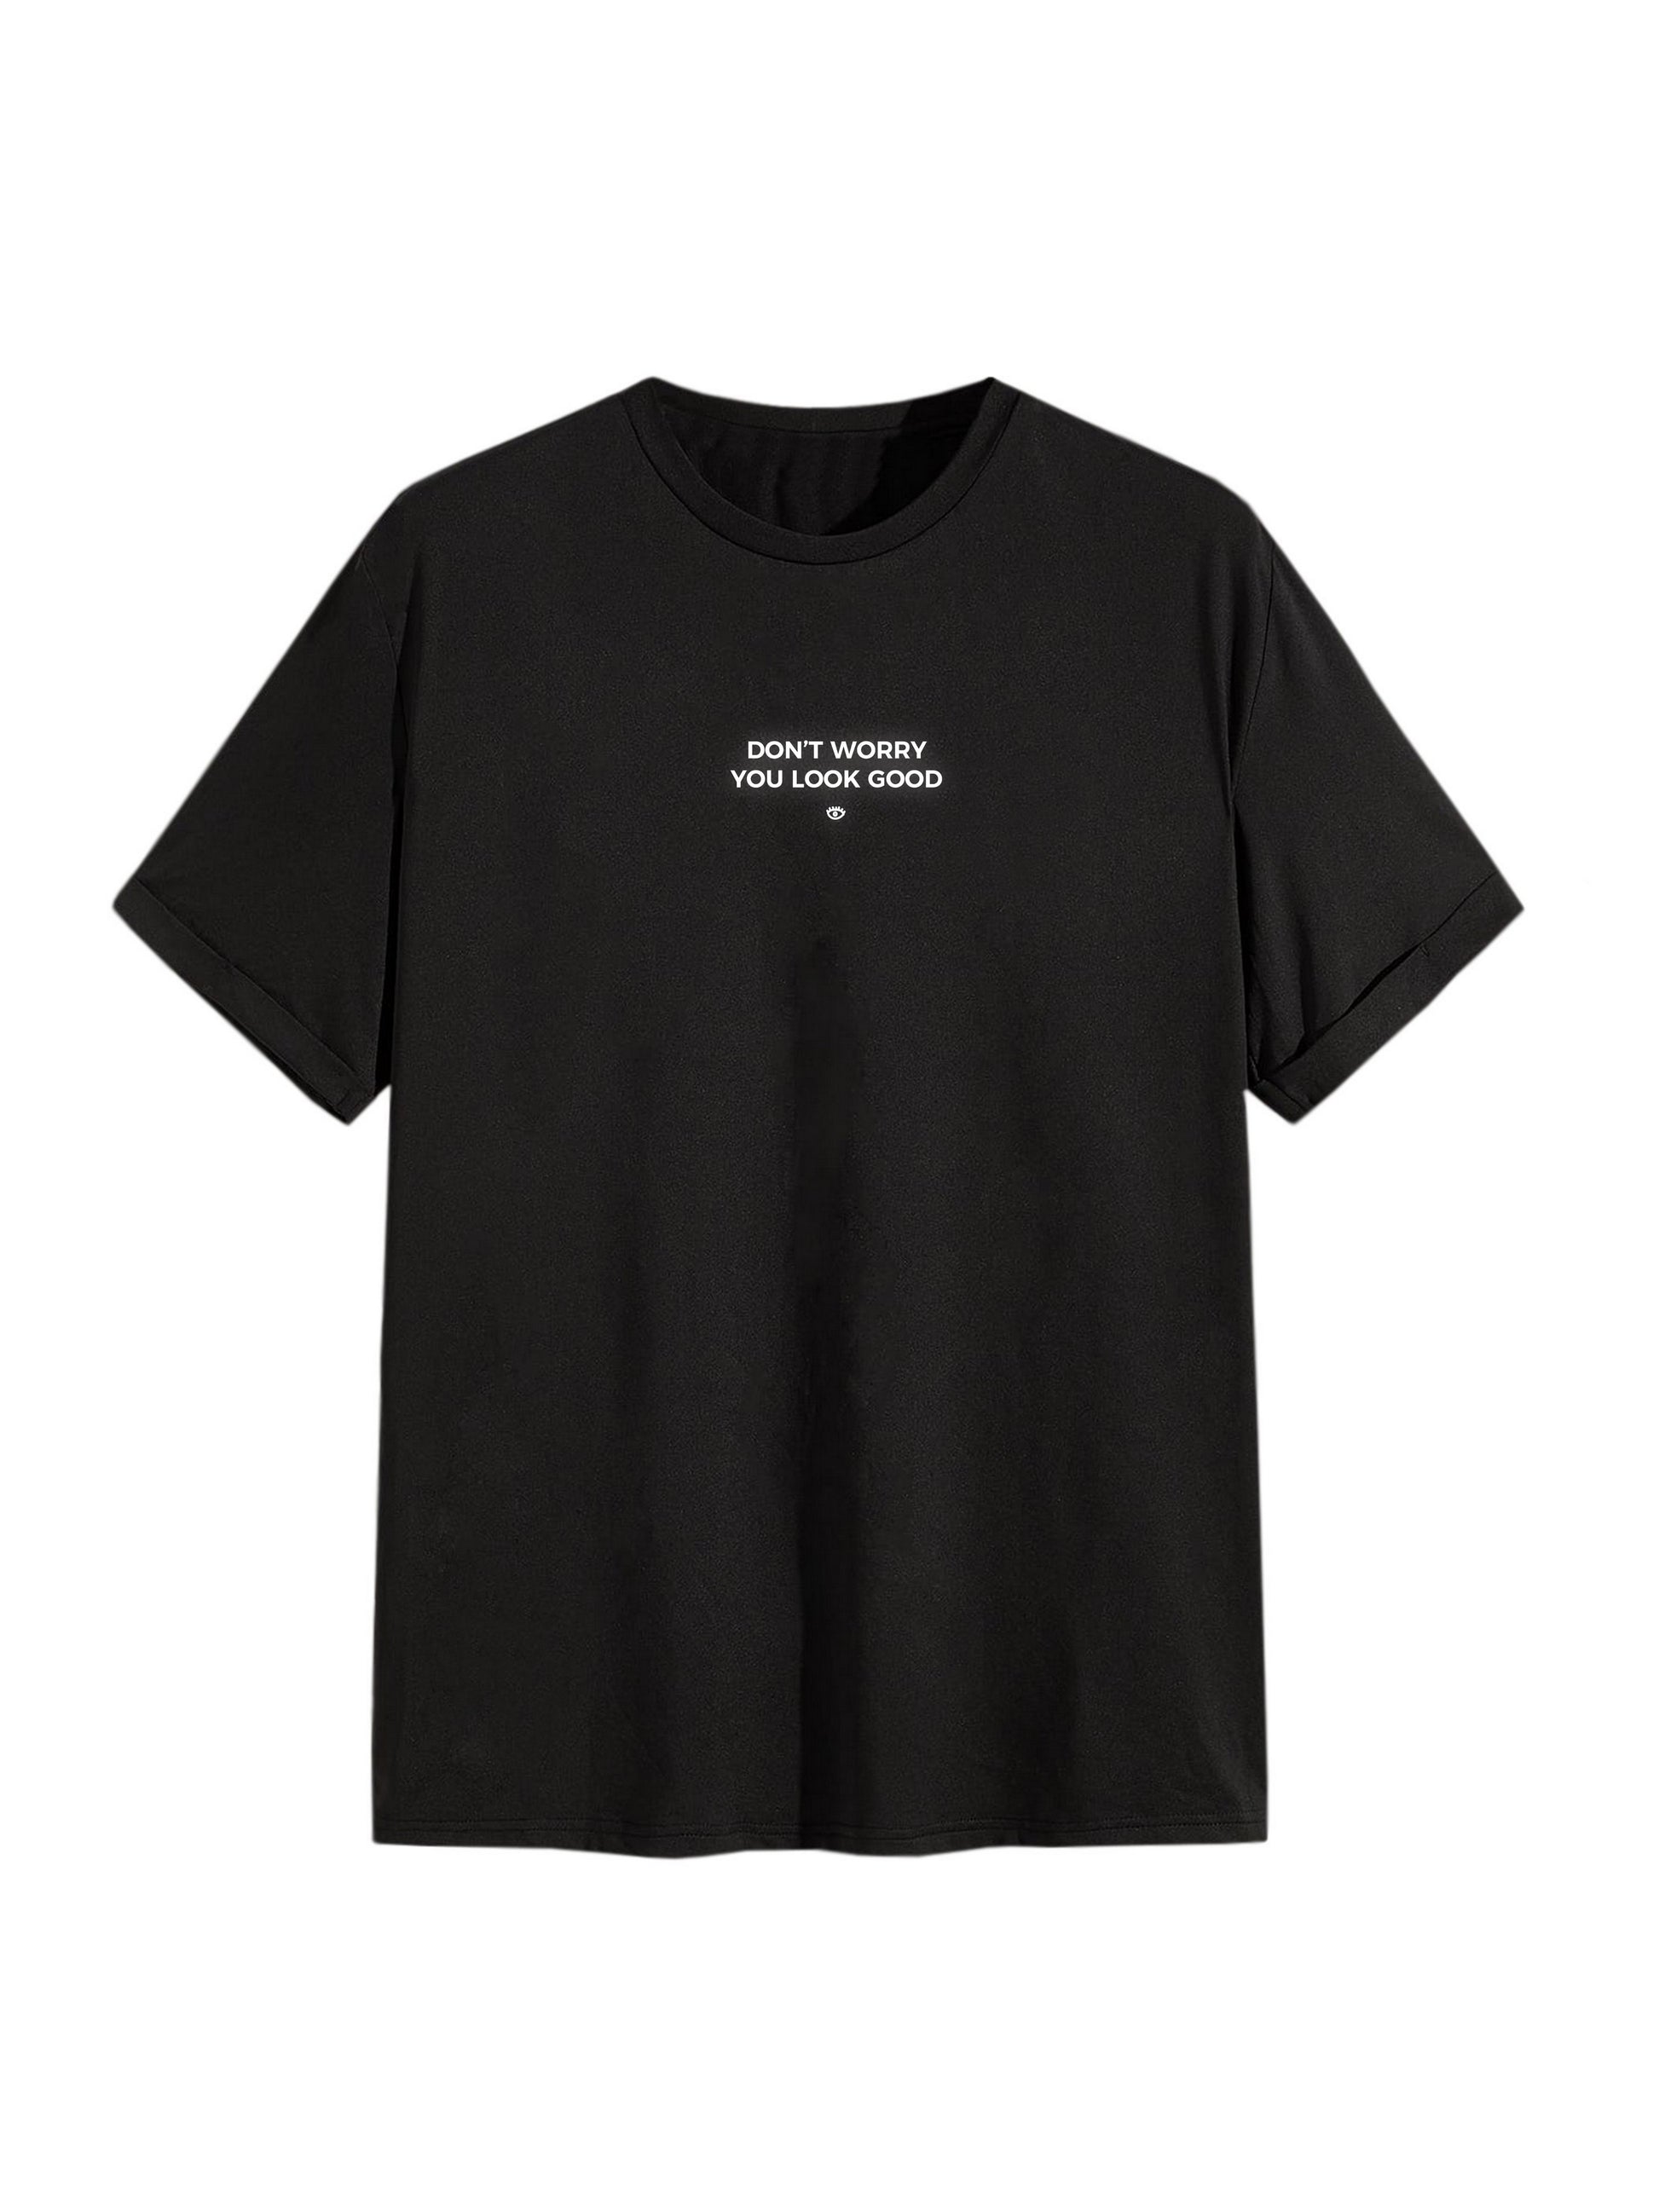 Tee shirt noir logo poitrine "you look good" 